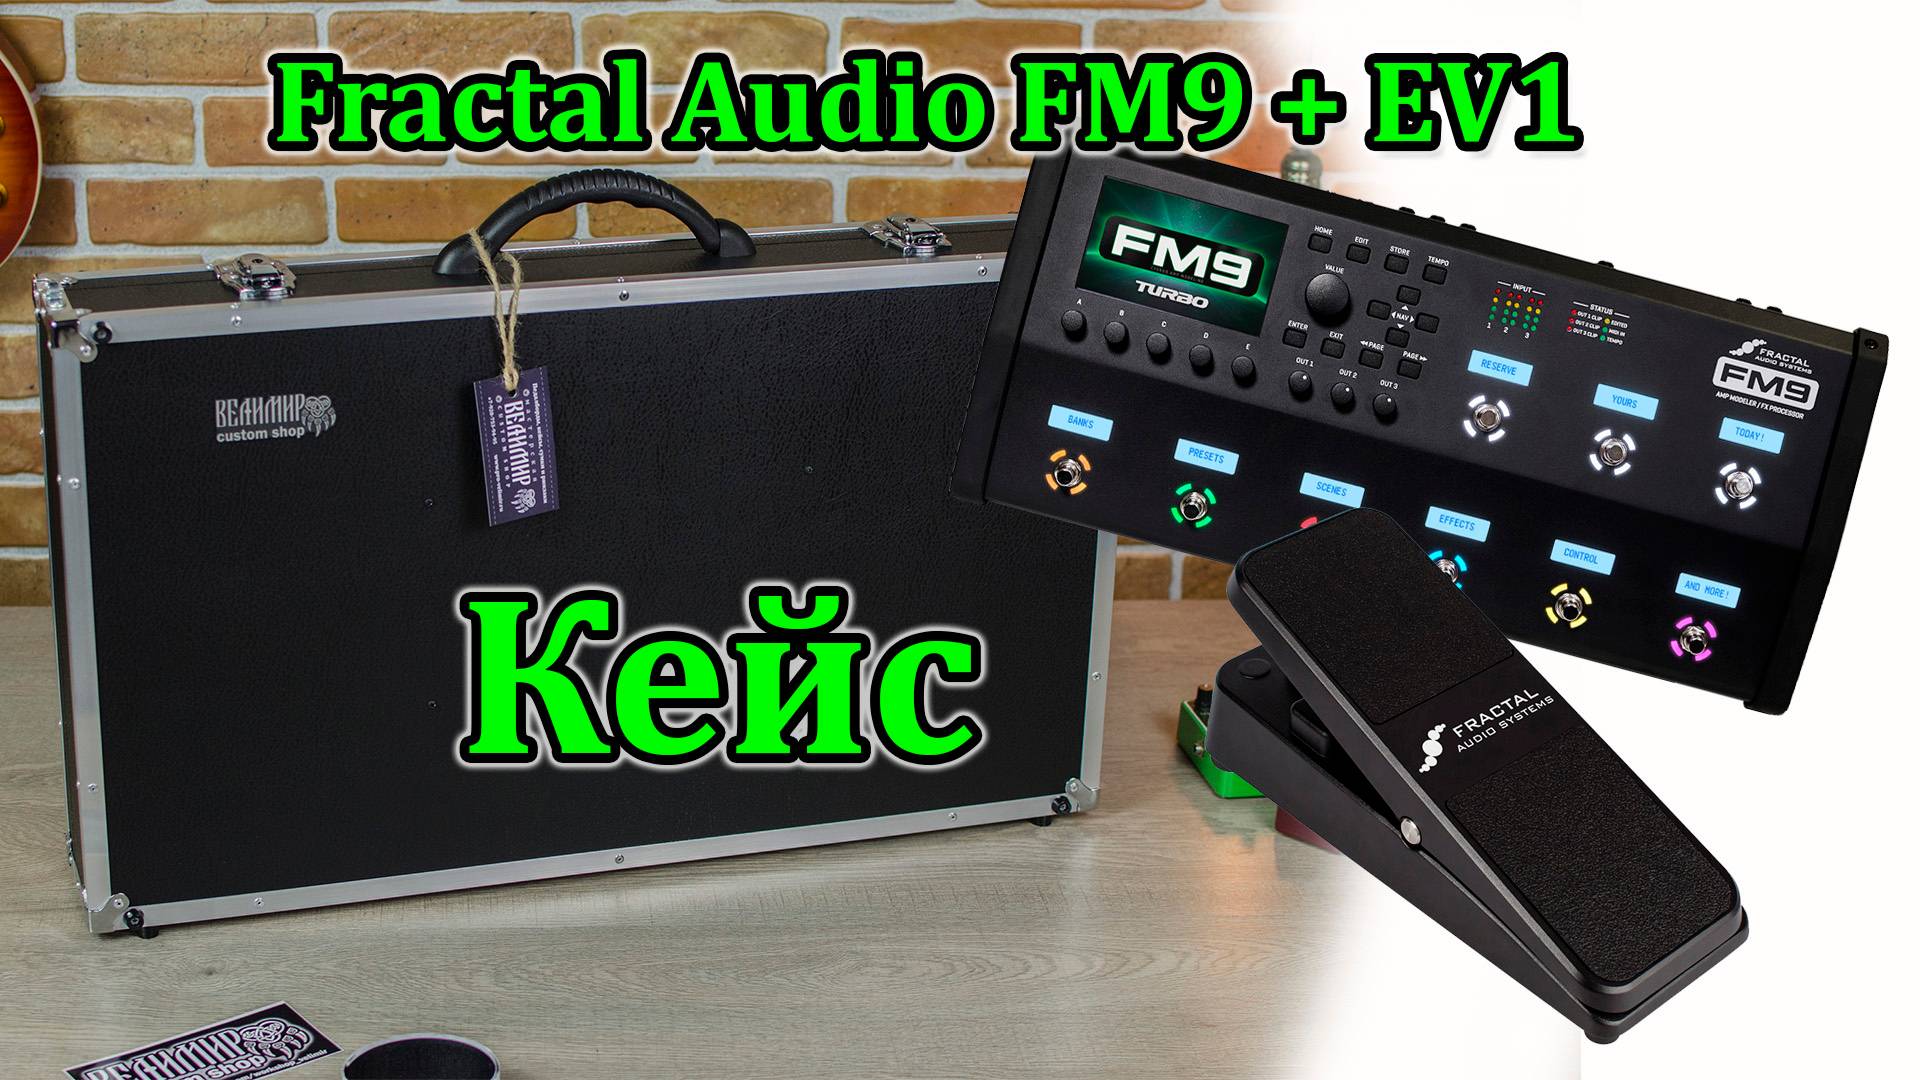 Кейс для процессора Fractal Audio FM9 + педаль EV1. Мастерская Велимир. Case for Fractal Audio FM9